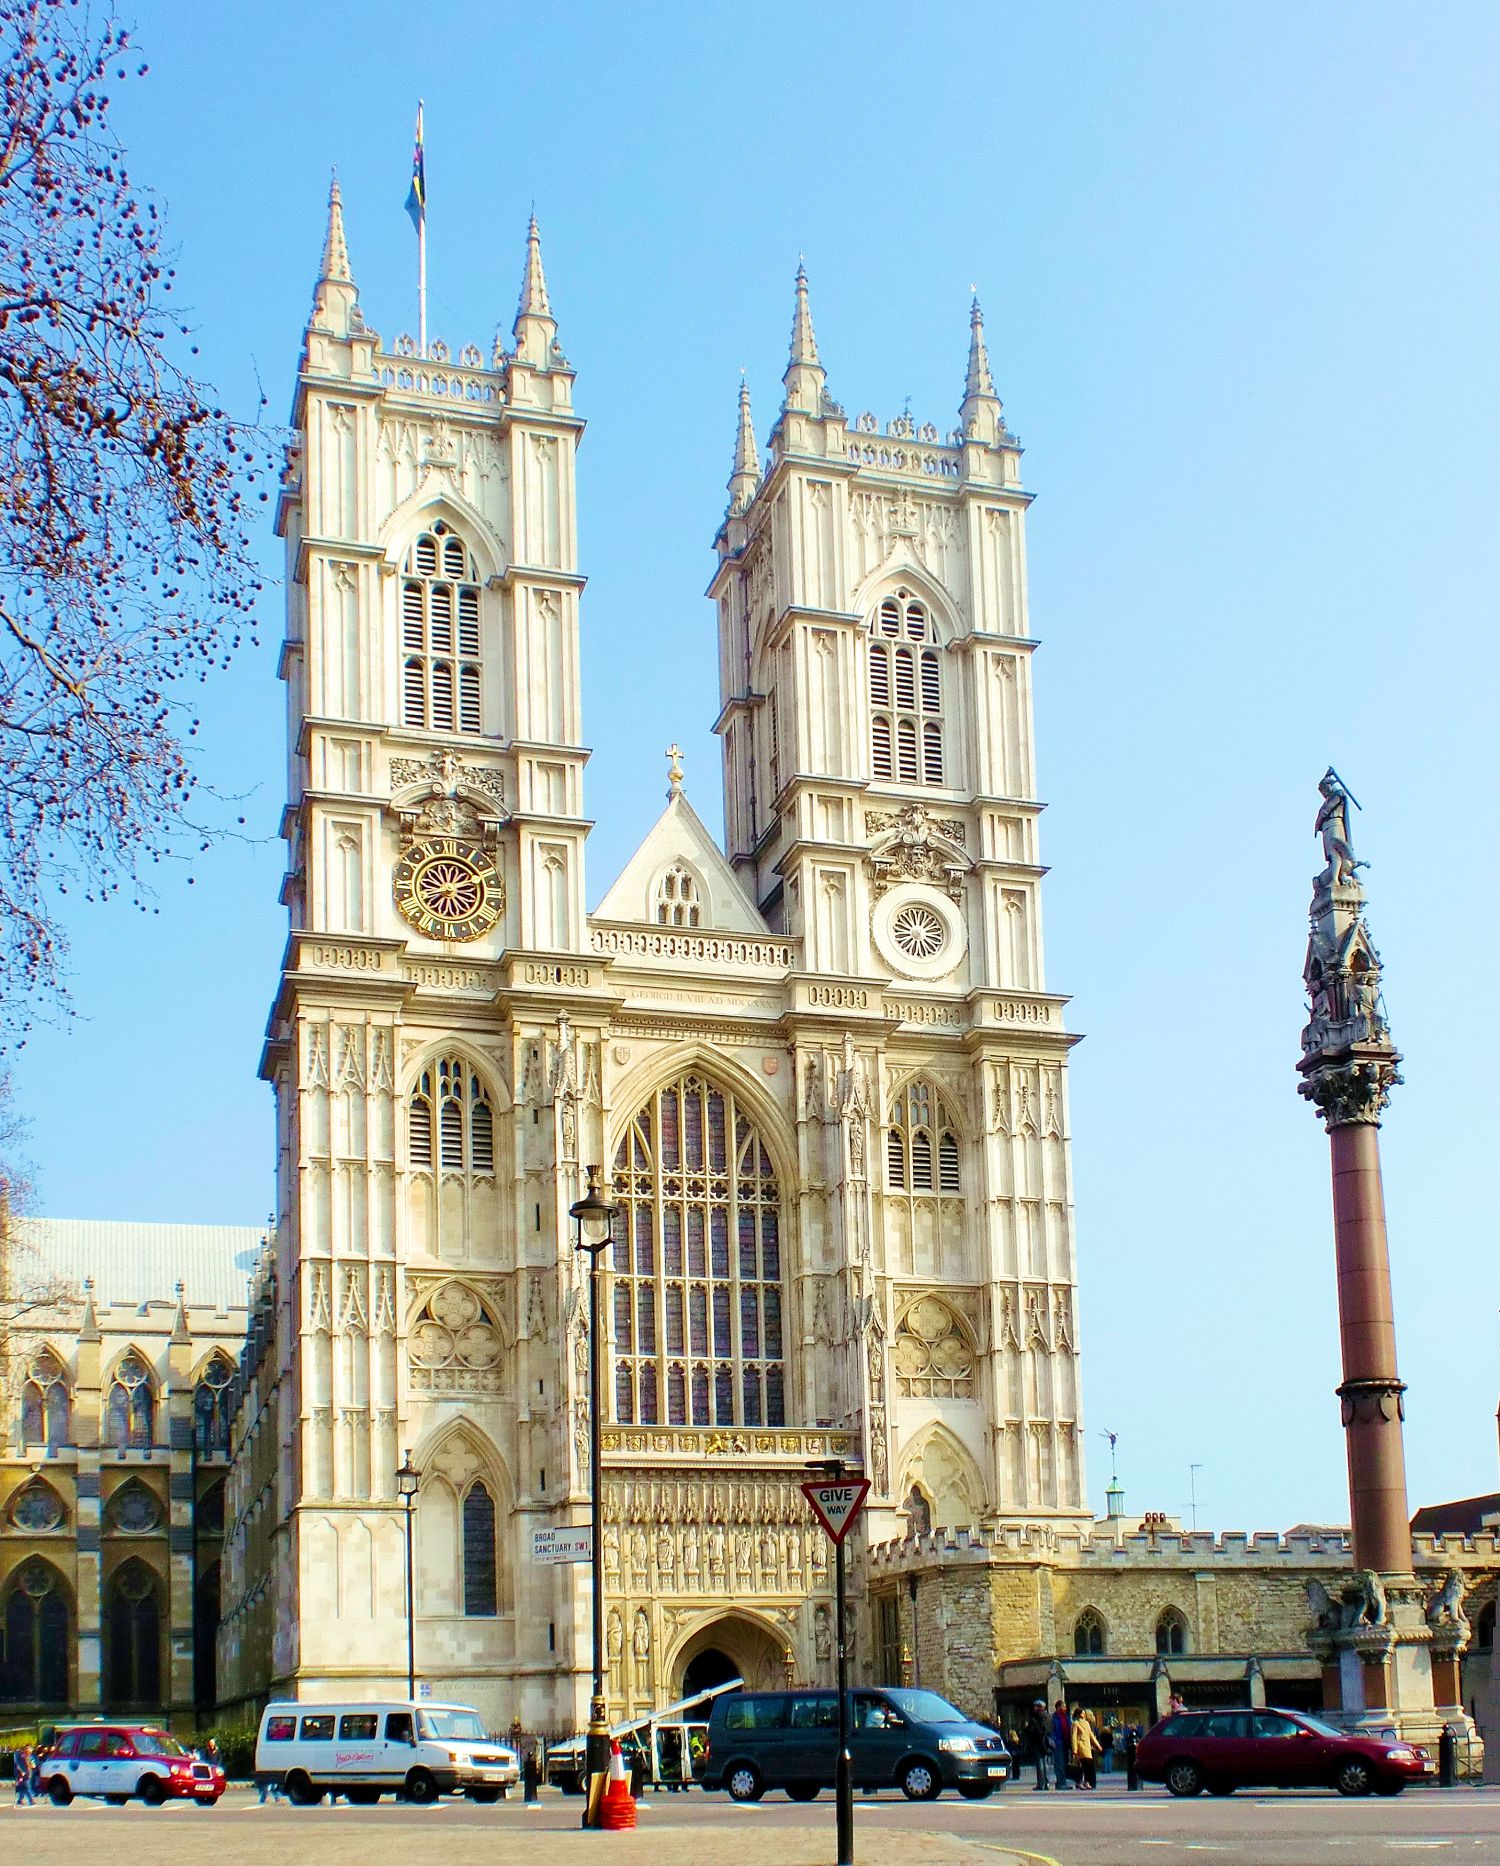 Cận cảnh Tu viện Westminster nơi diễn ra Lễ đăng quang của Vua Charles III - Ảnh 4.